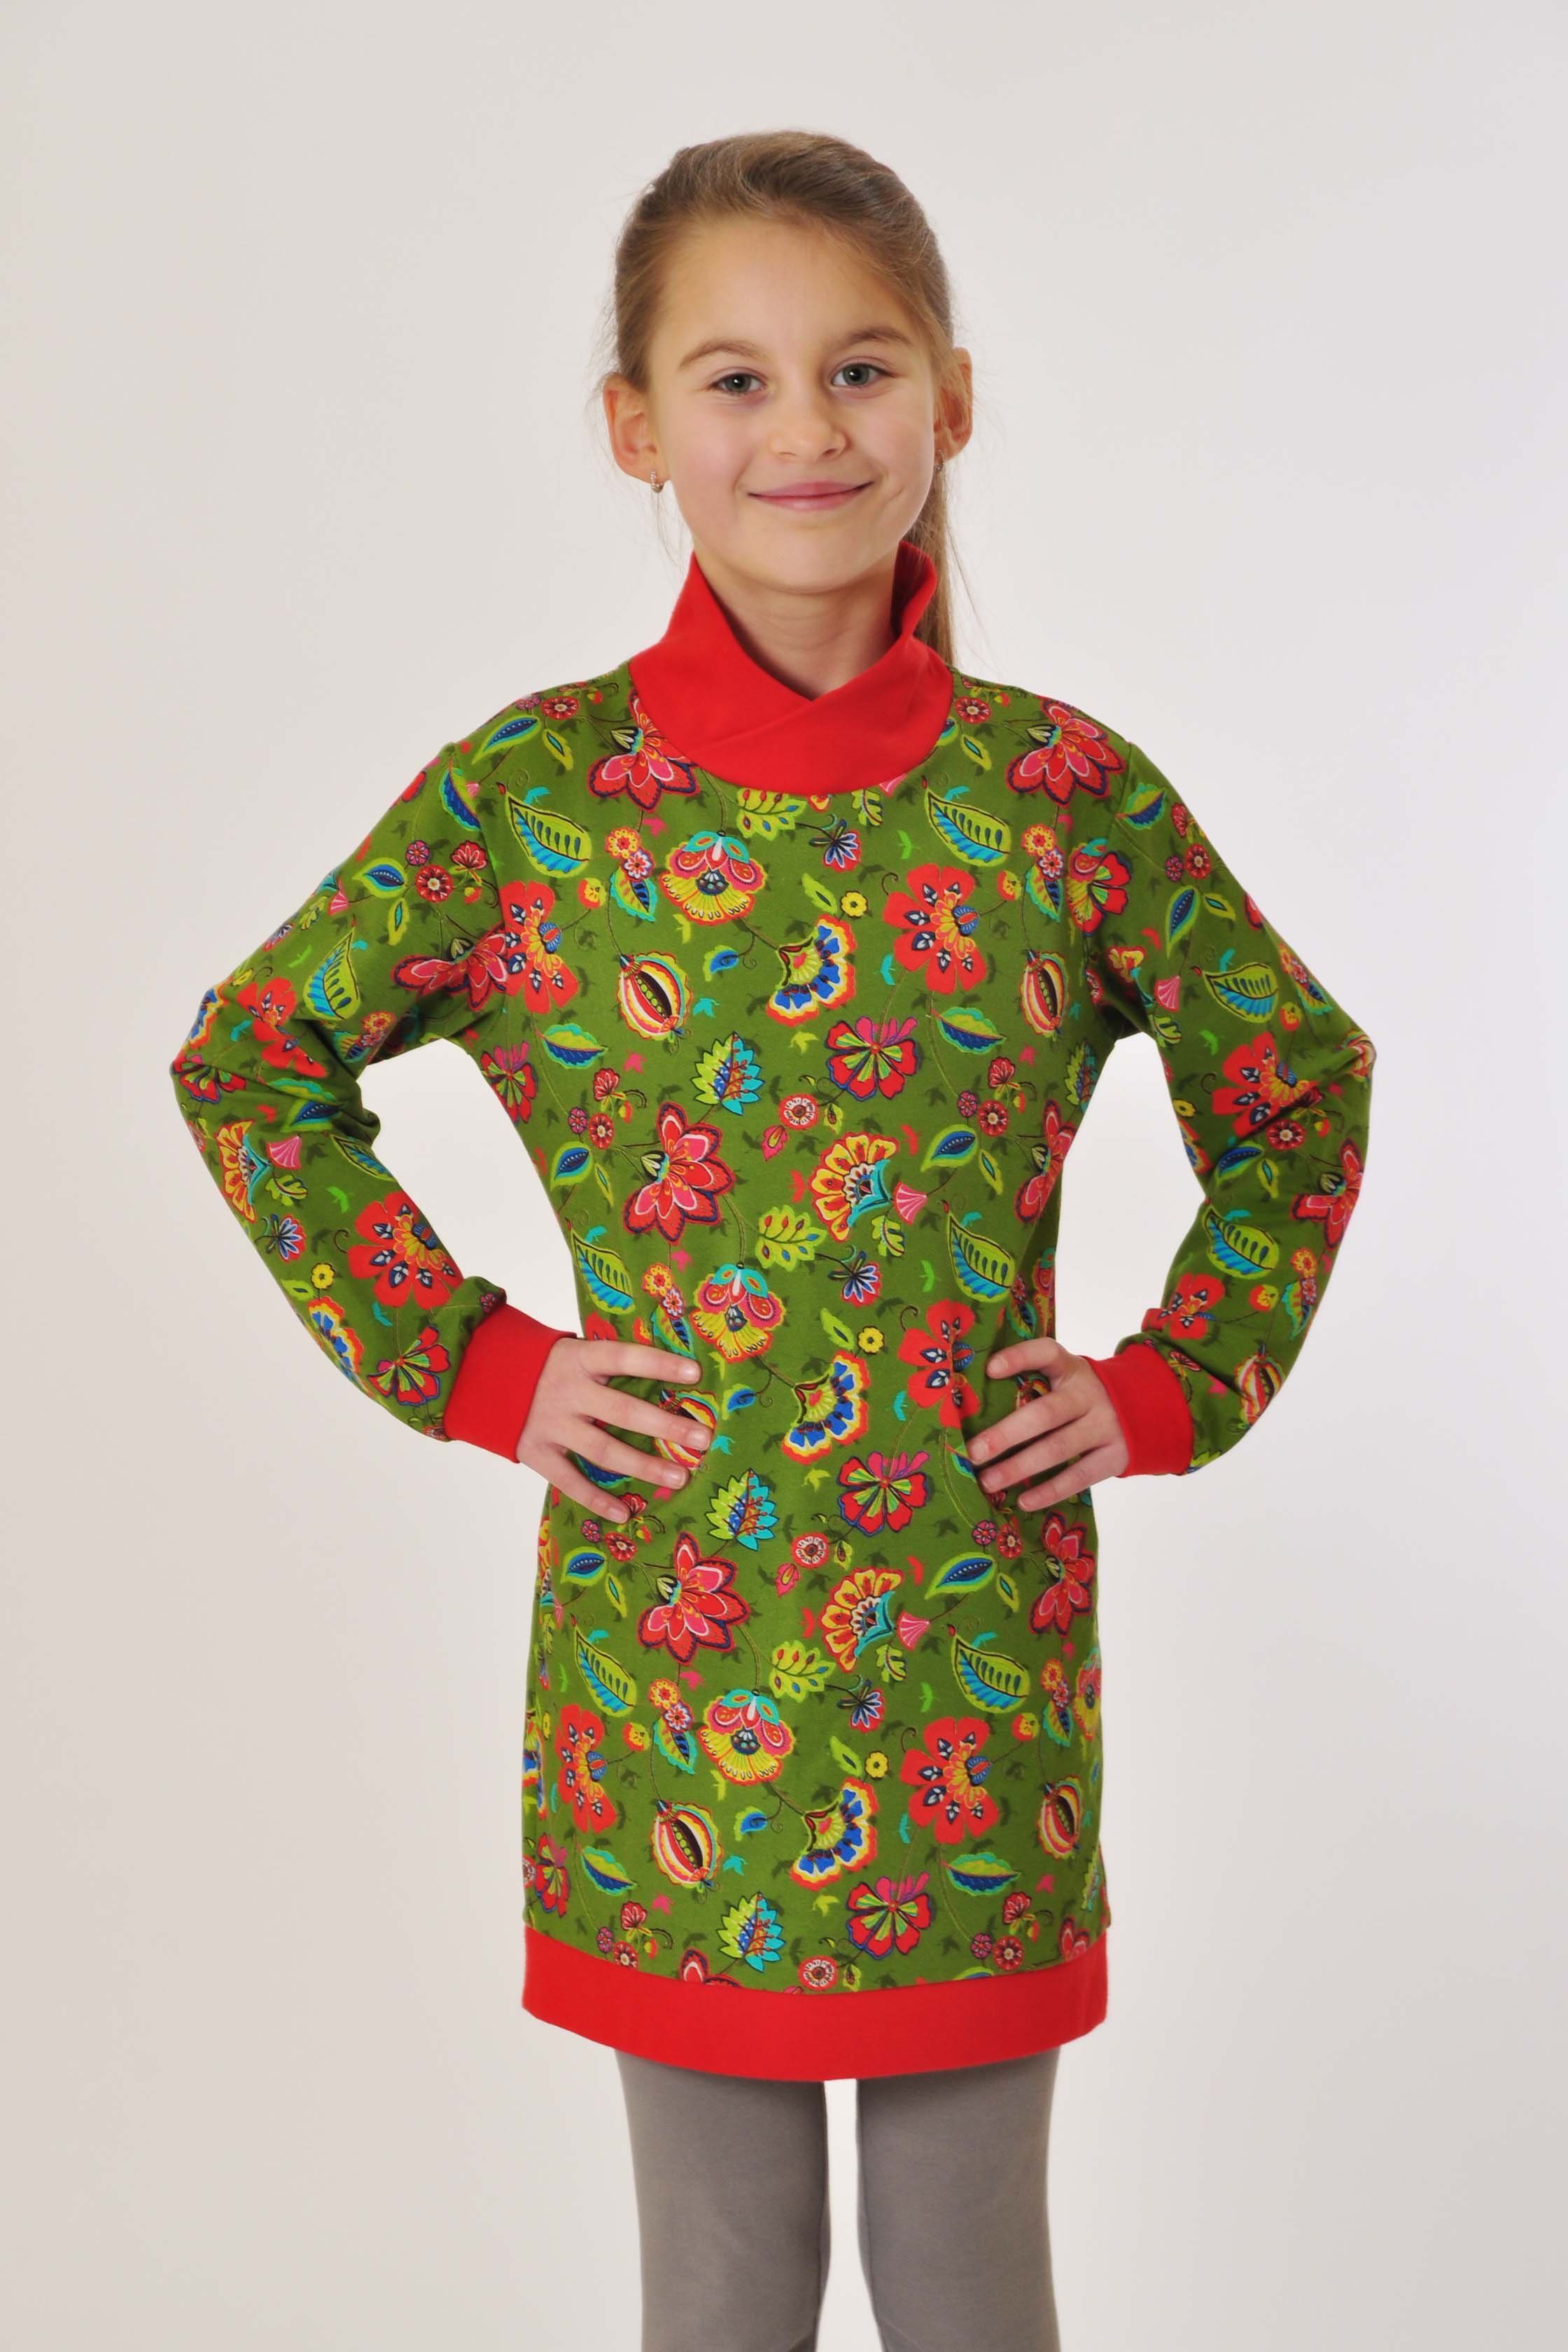 coolismo Sweatkleid Sweatshirt Produktion europäische Mädchen mit Kleid Motivdruck für Blumen oliv coole